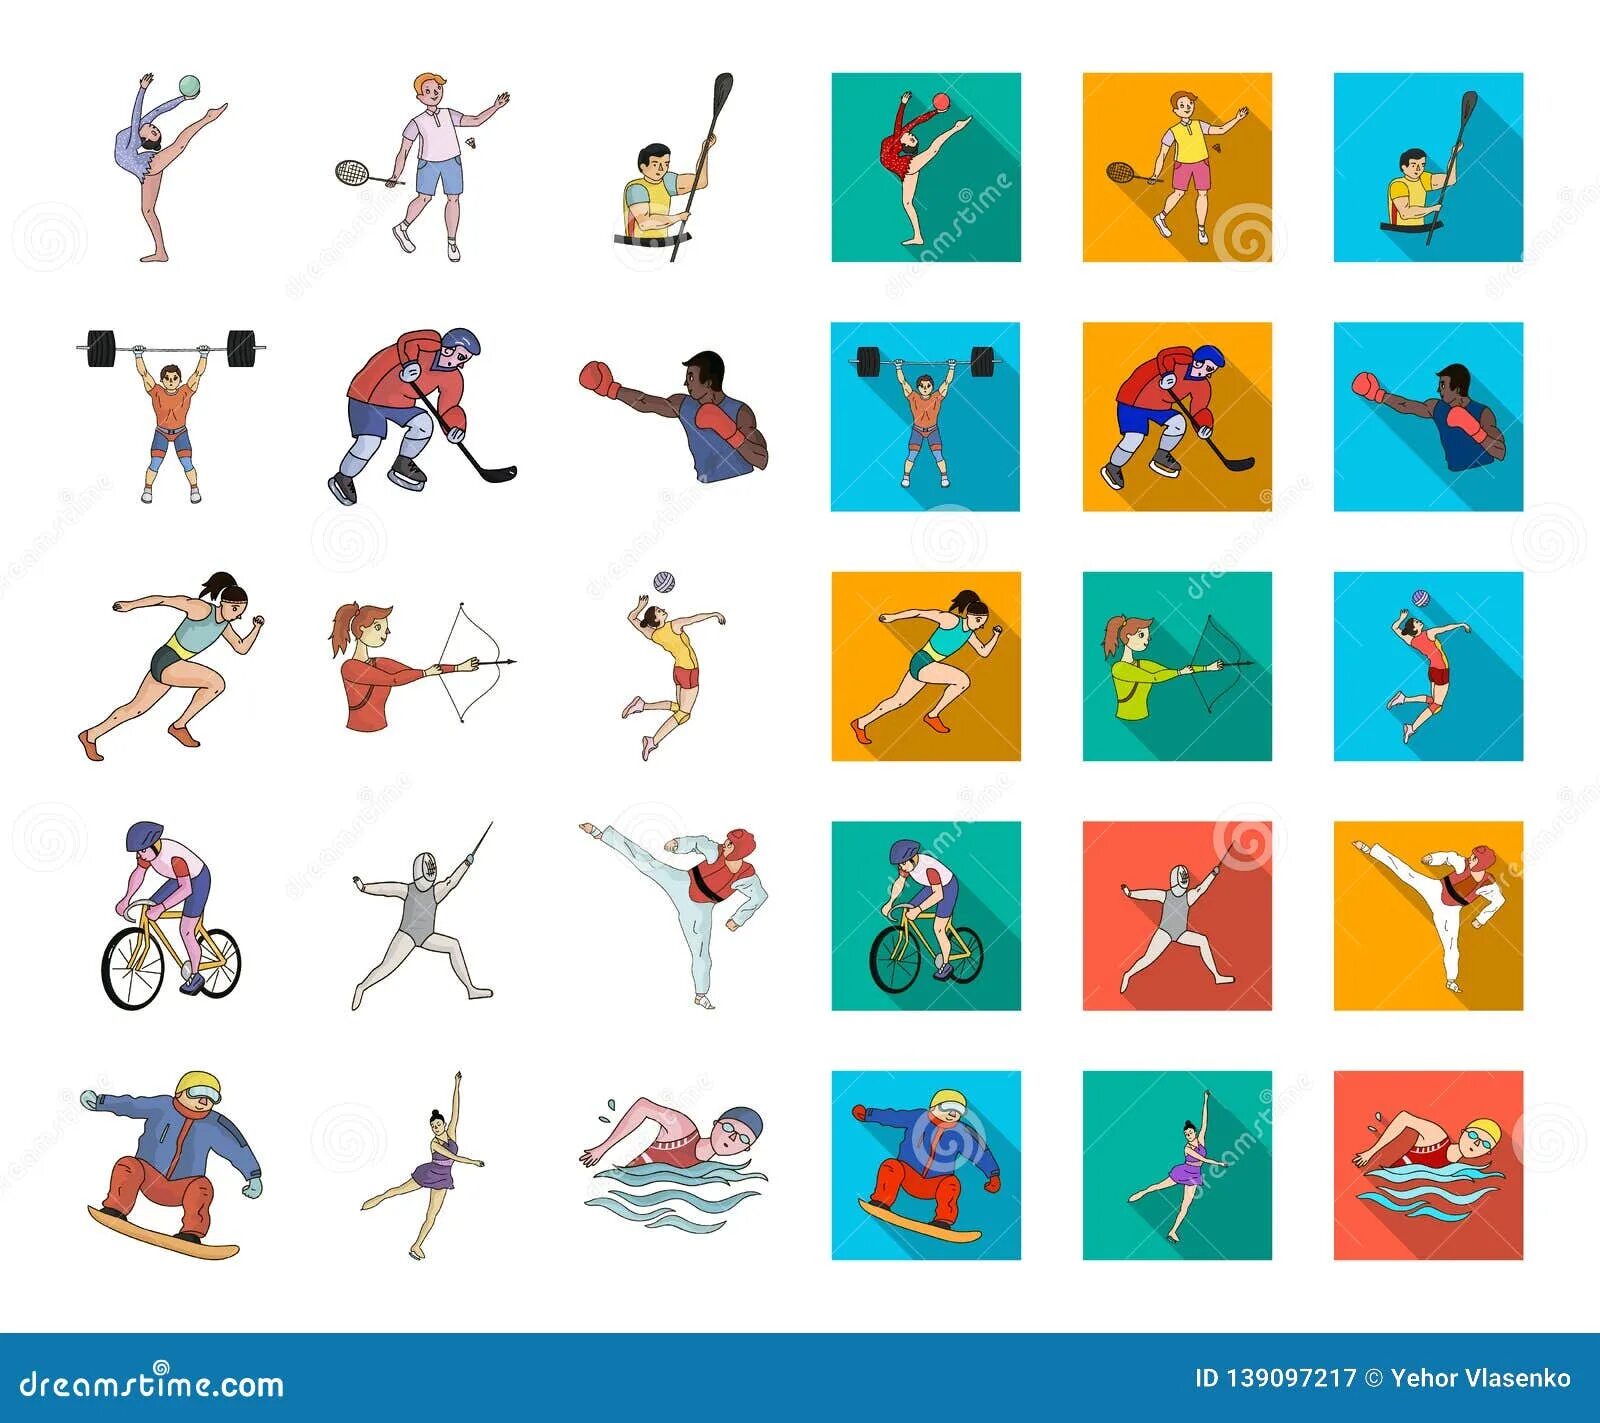 Various kinds of sports. Изображения видов спорта. Атрибуты для летних видов спорта для детей. Знаки видов спорта. Карточки виды спорта для детей.